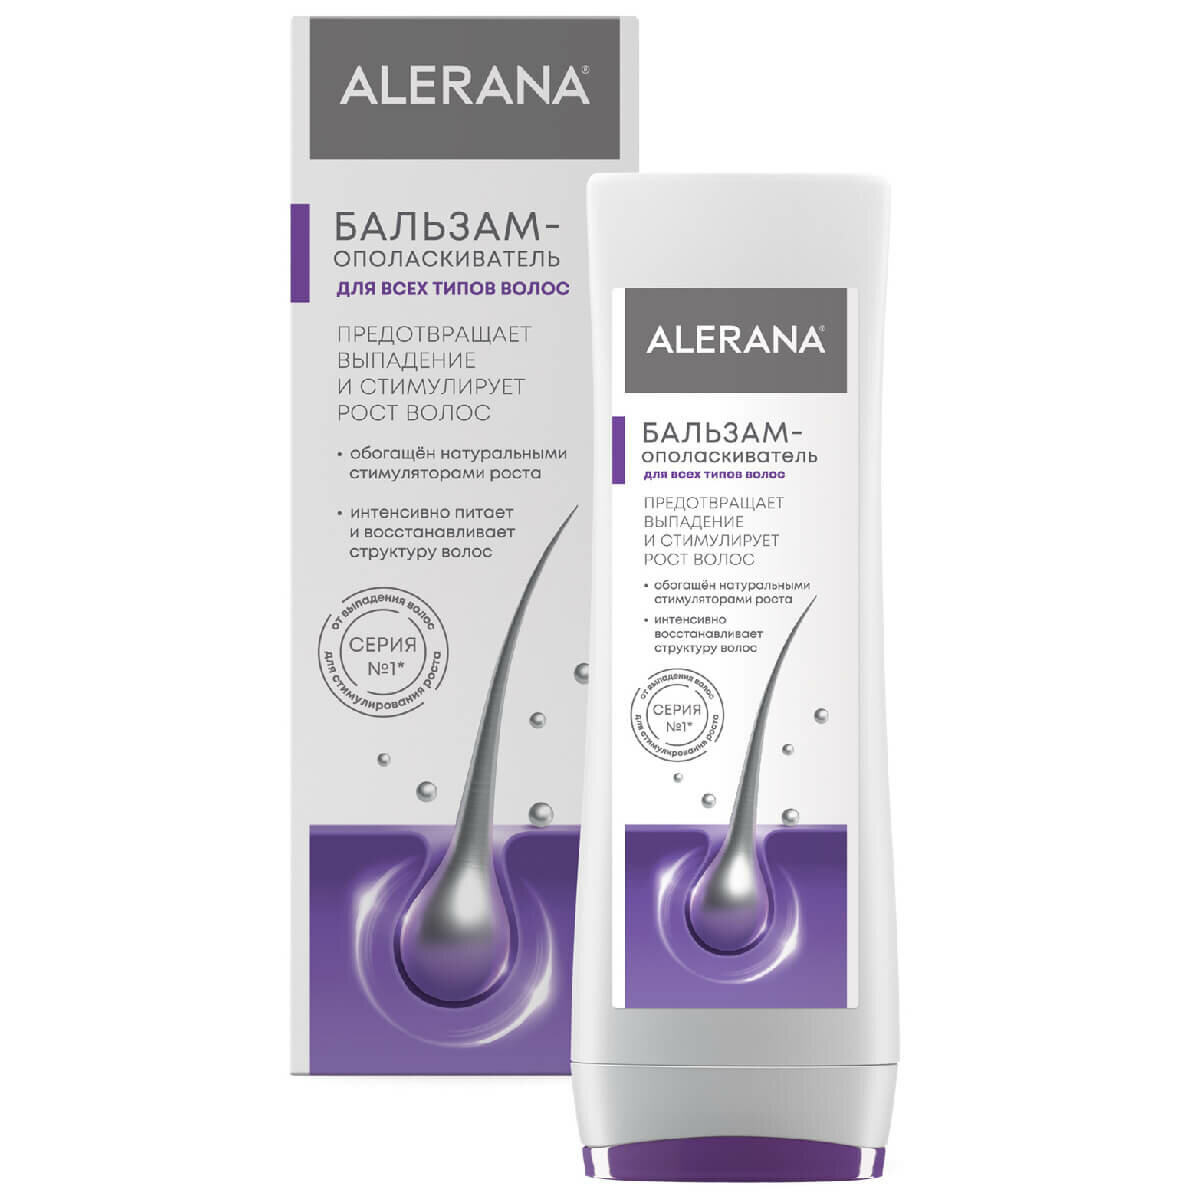 Alerana Pharma Care Бальзам-ополаскиватель для всех типов волос, 200 мл, Alerana